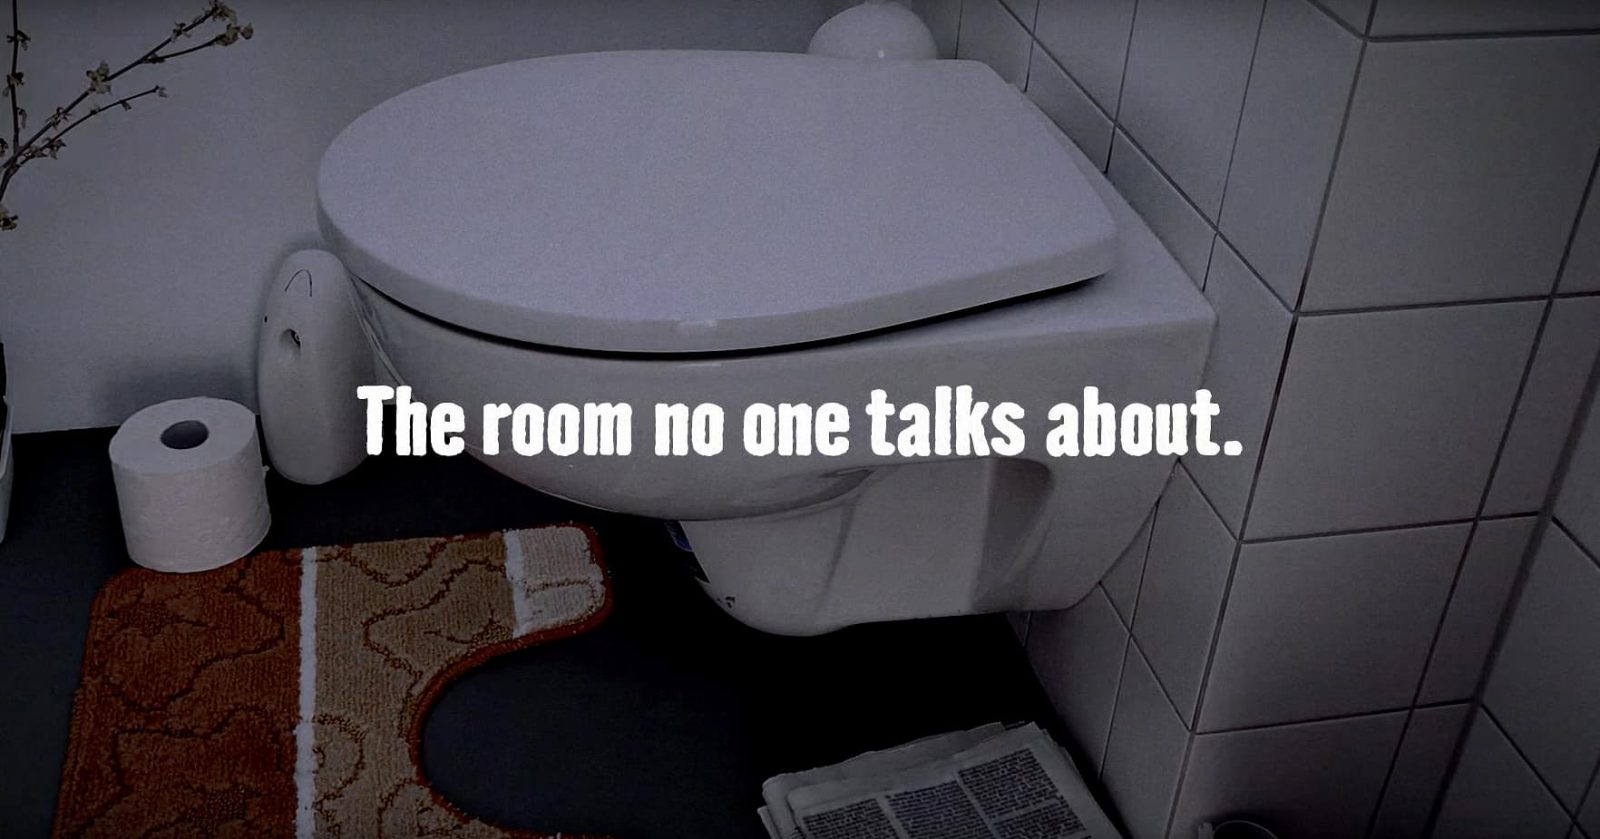 The HORNBACH toilet | A monument against silence